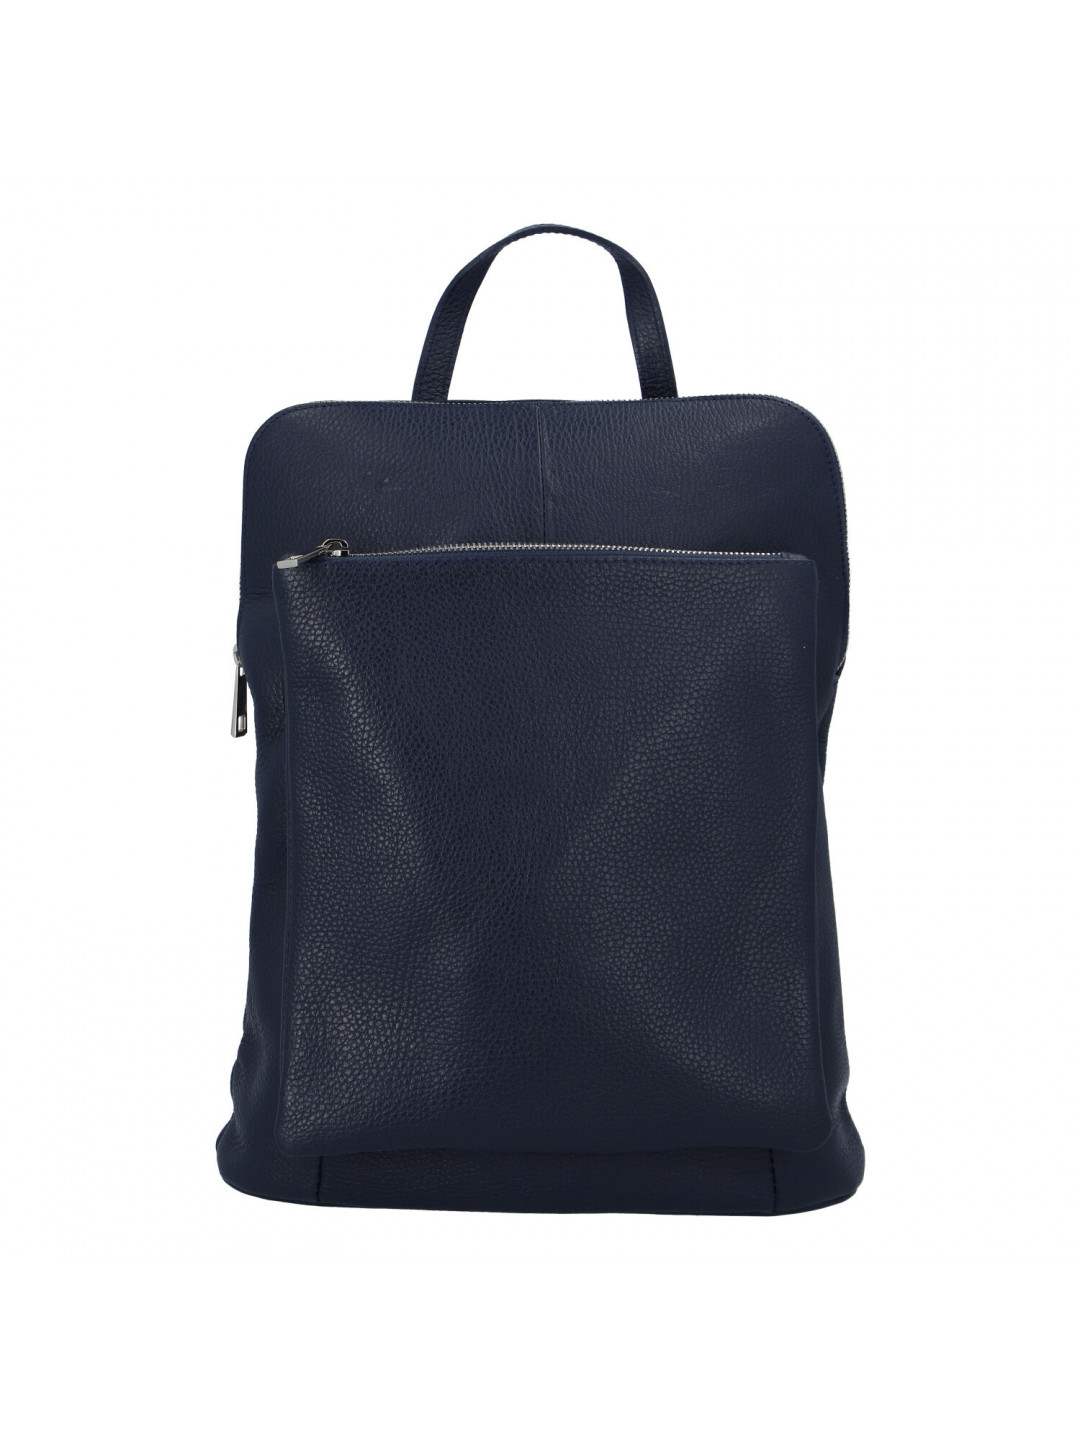 Dámský kožený batůžek kabelka tmavě modrý – ItalY Houtel